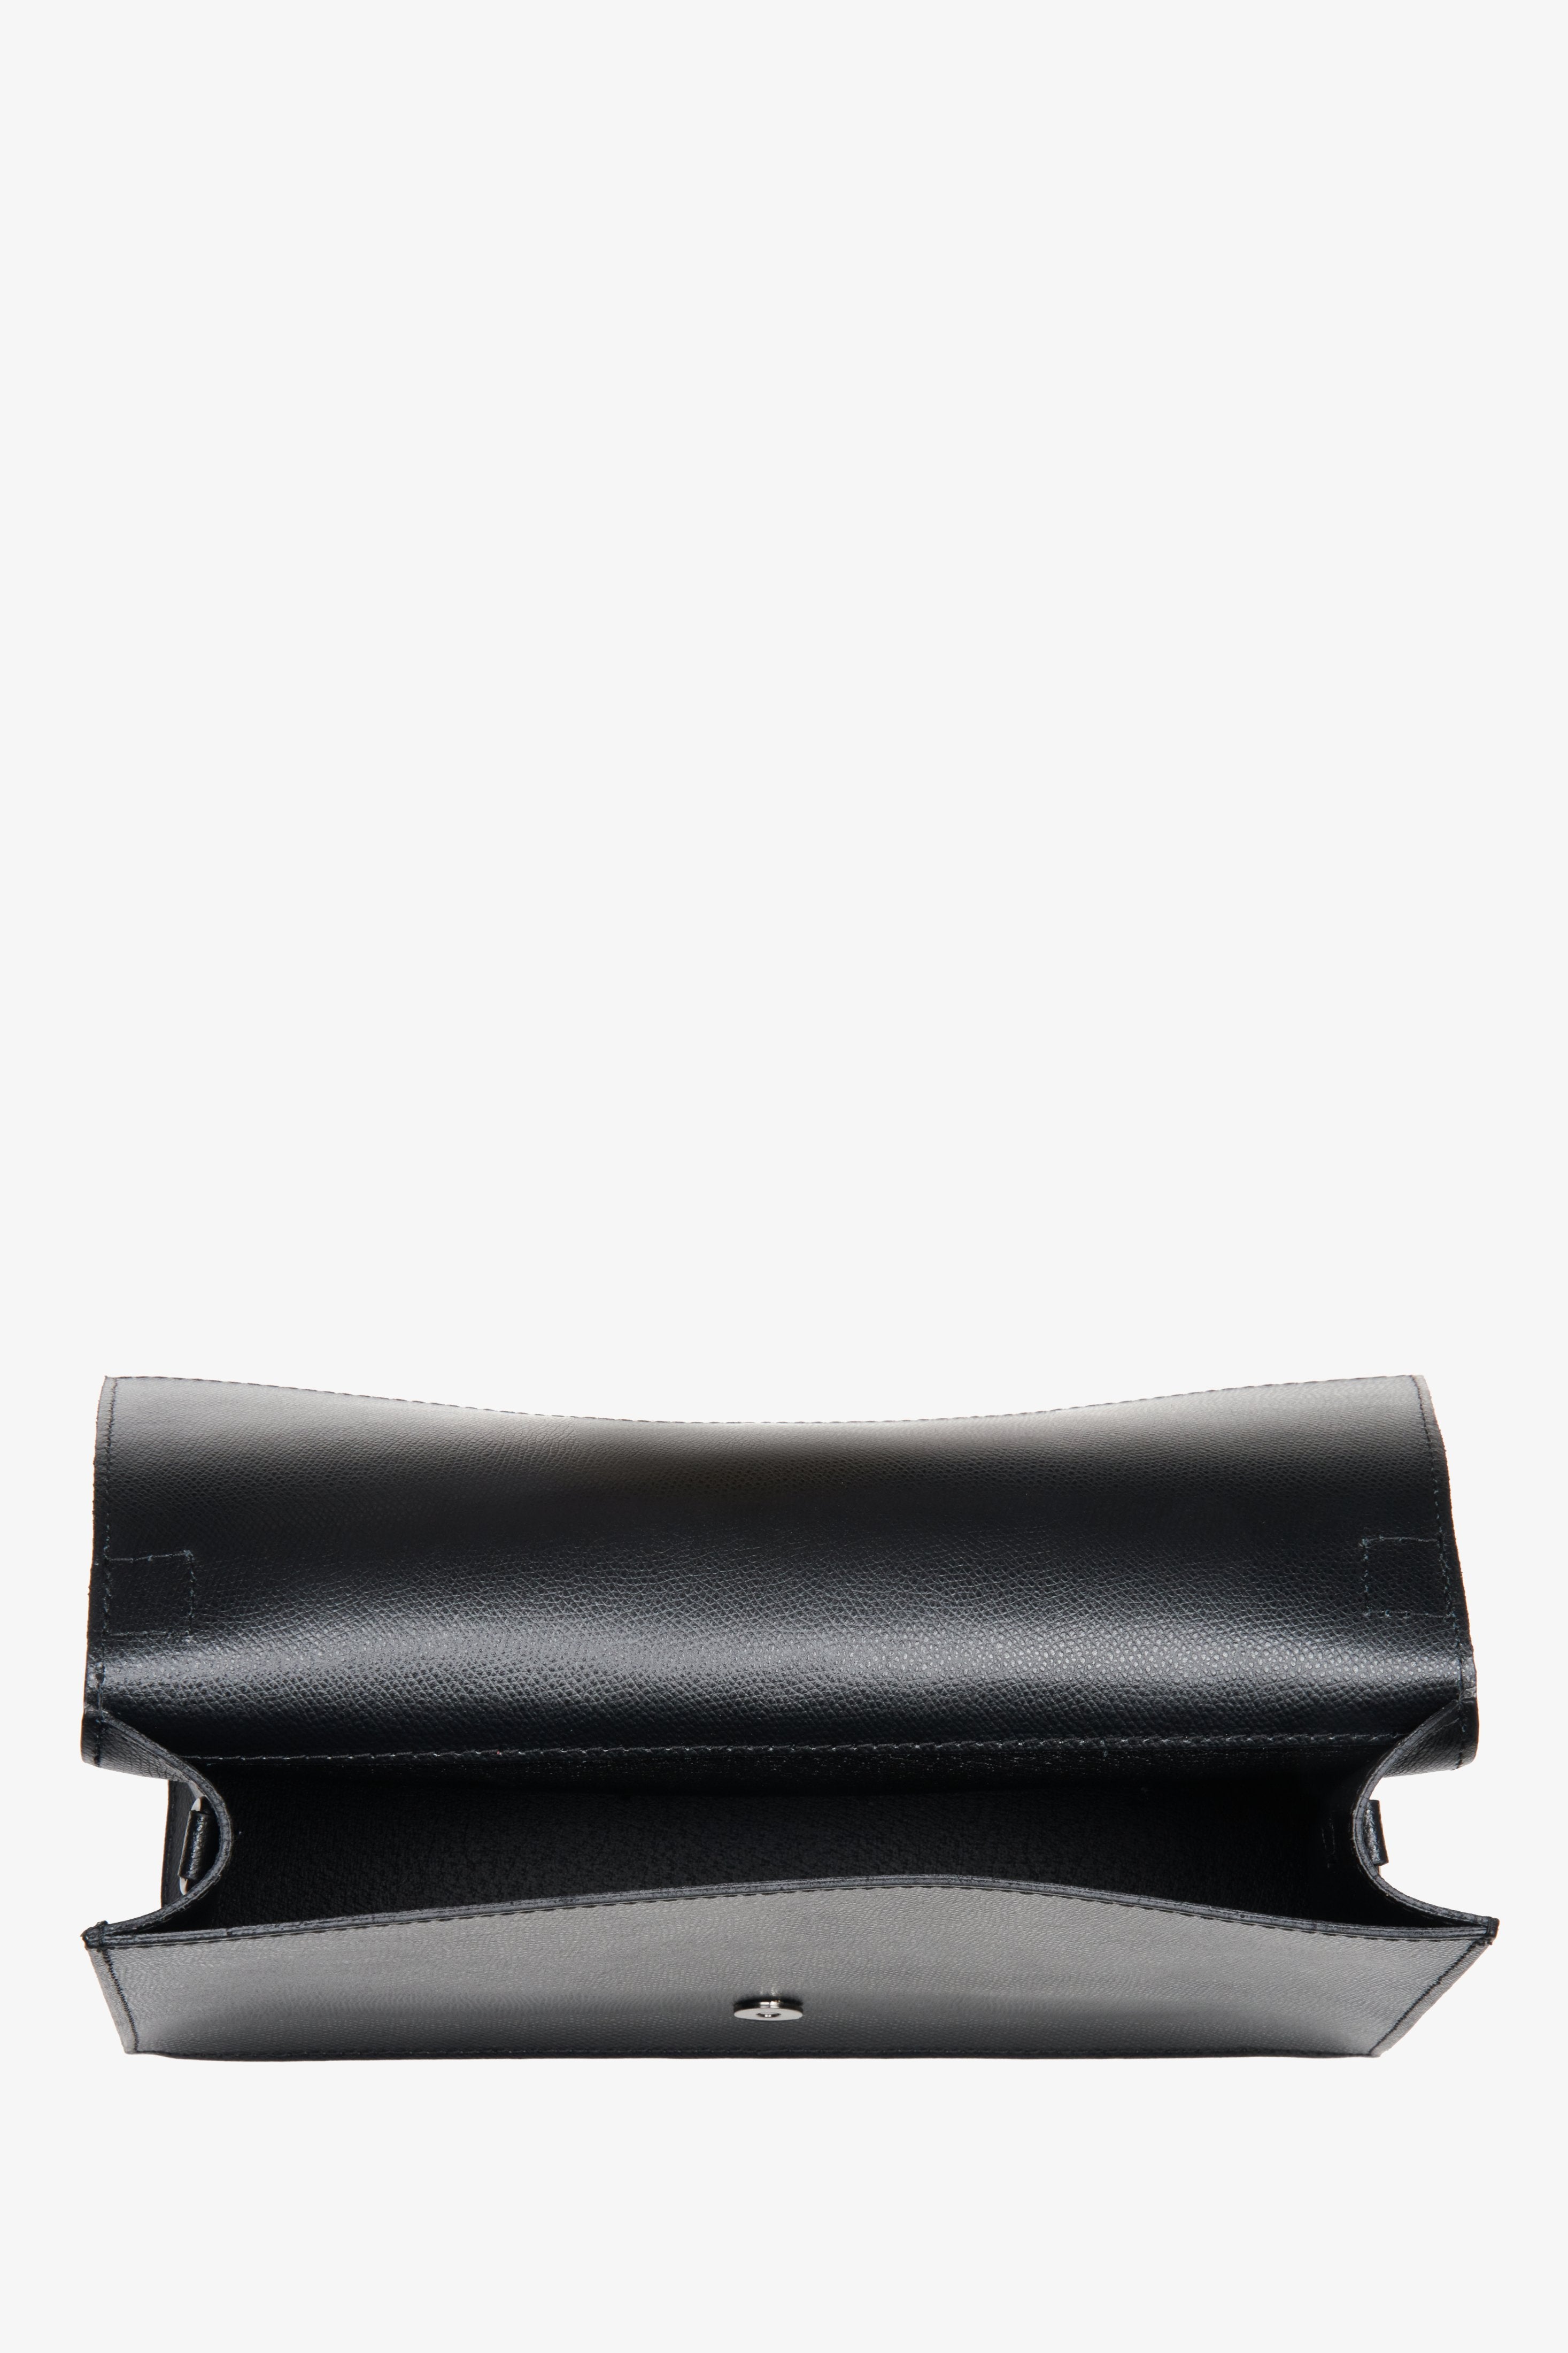 Mała skórzana torebka damska Estro w kolorze czarnym - wnętrze modelu.